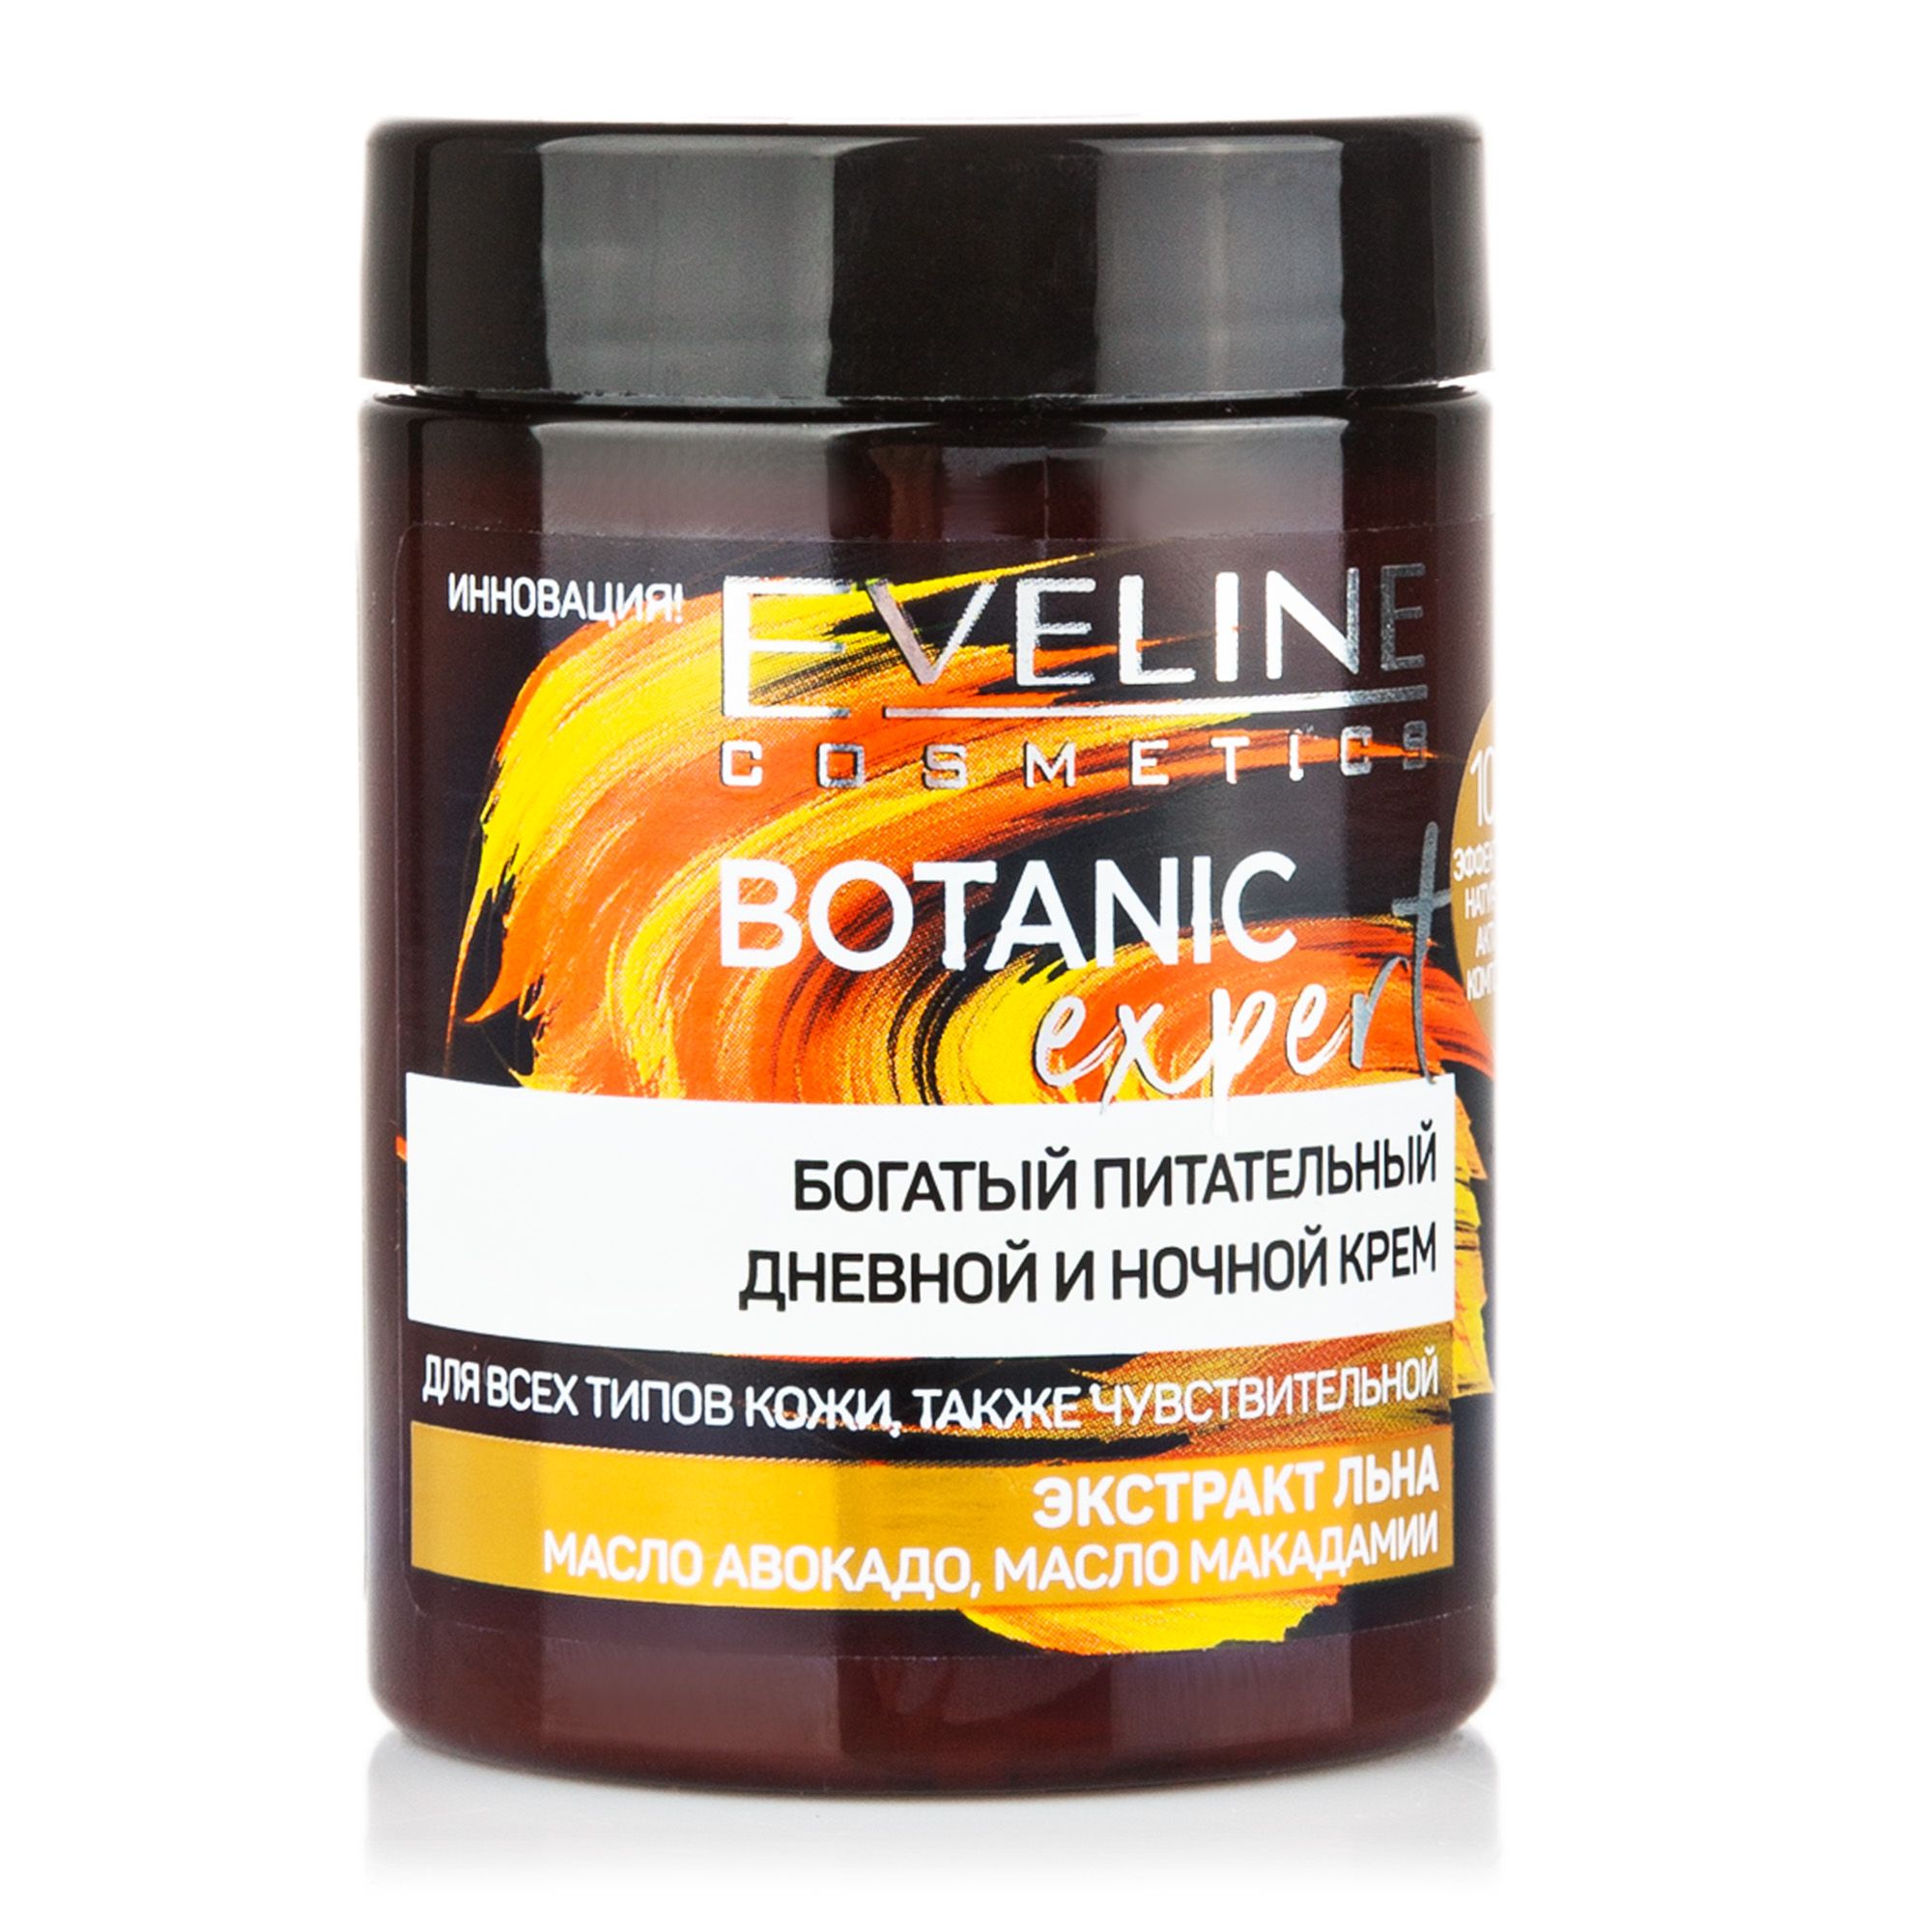   / Eveline Botanic Expert         100 